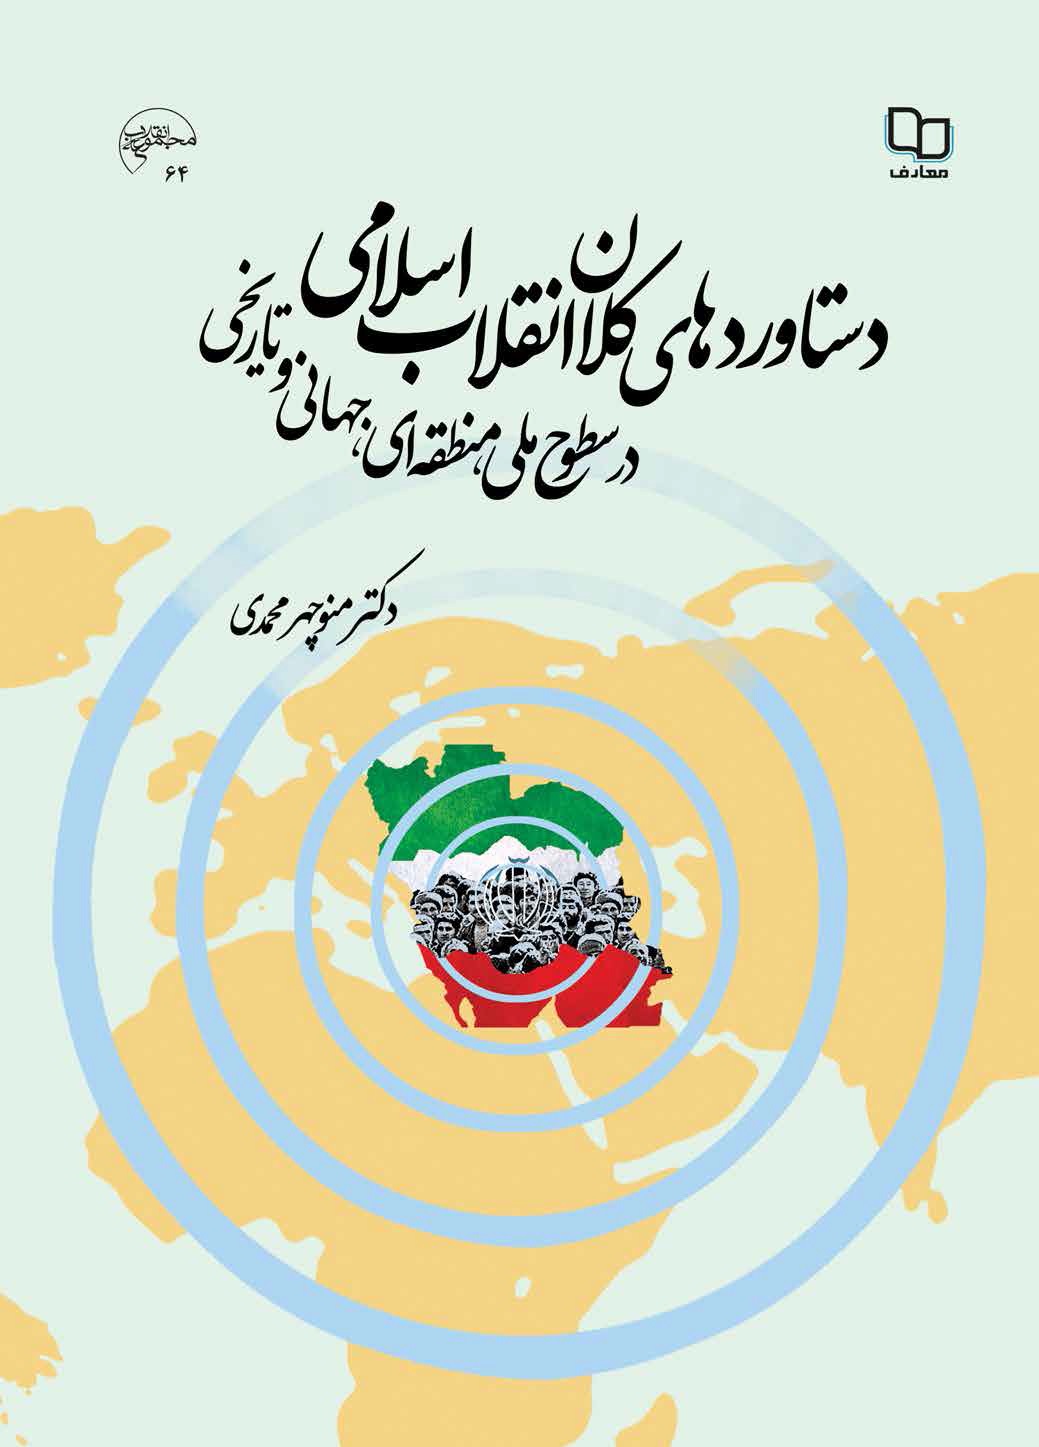 دستاوردهای کلان انقلاب اسلامی در سطوح ملی، منطقه ای، جهانی و تاریخی 